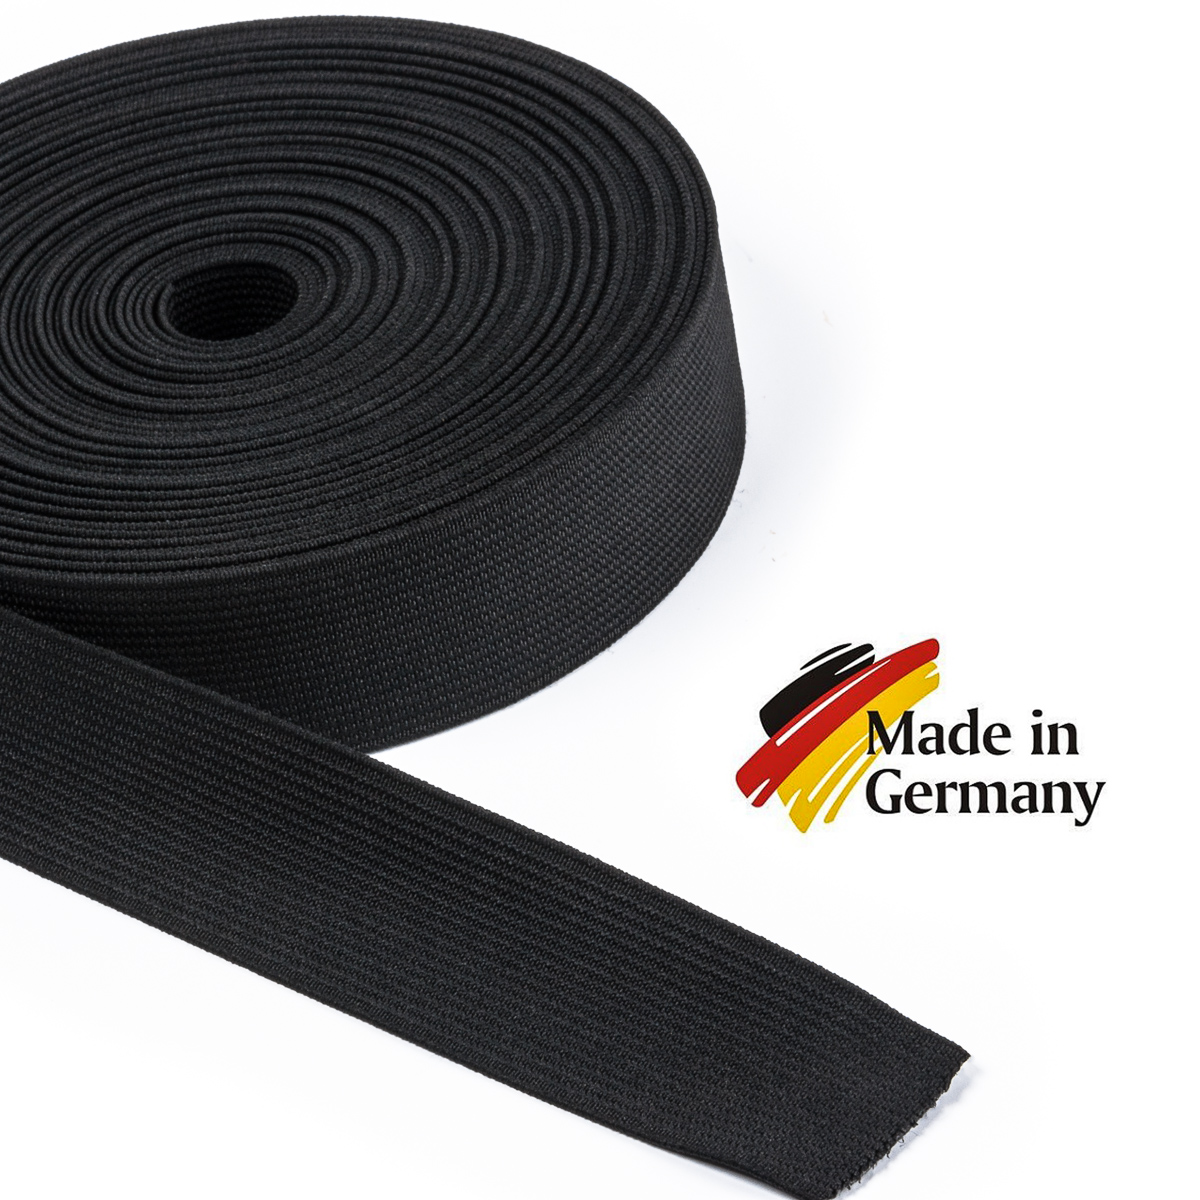 Qualität 3mm Marine Grade elastisches Dämpfungs Bungee Seil Elastikband für 